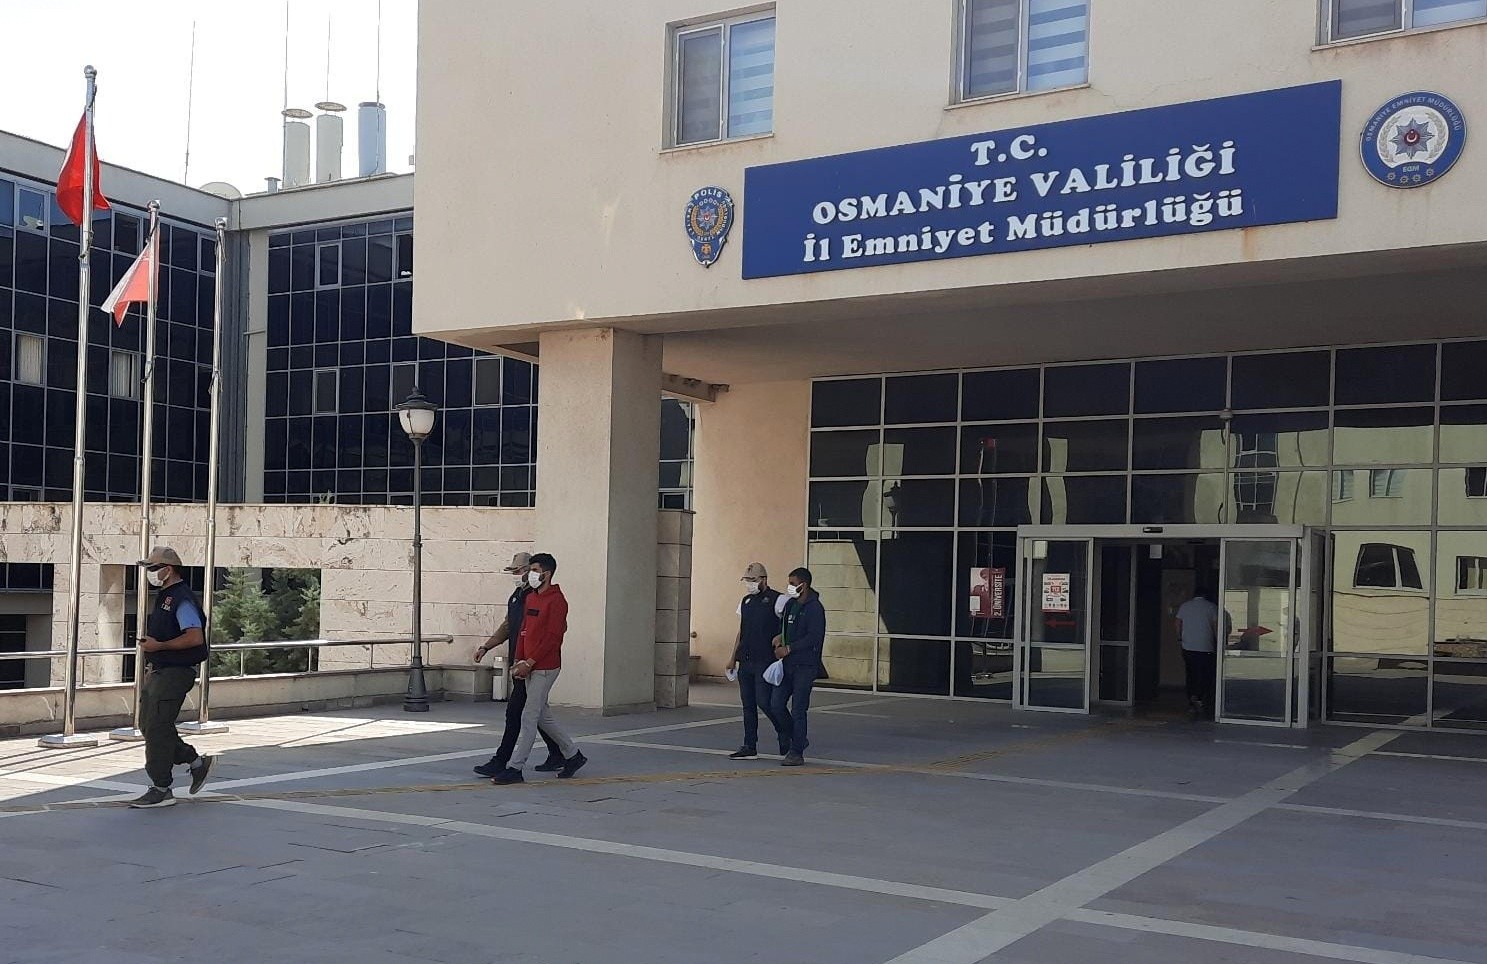 Osmaniye merkezli 5 ilde terör operasyonu: 3 kişi tutuklandı #osmaniye